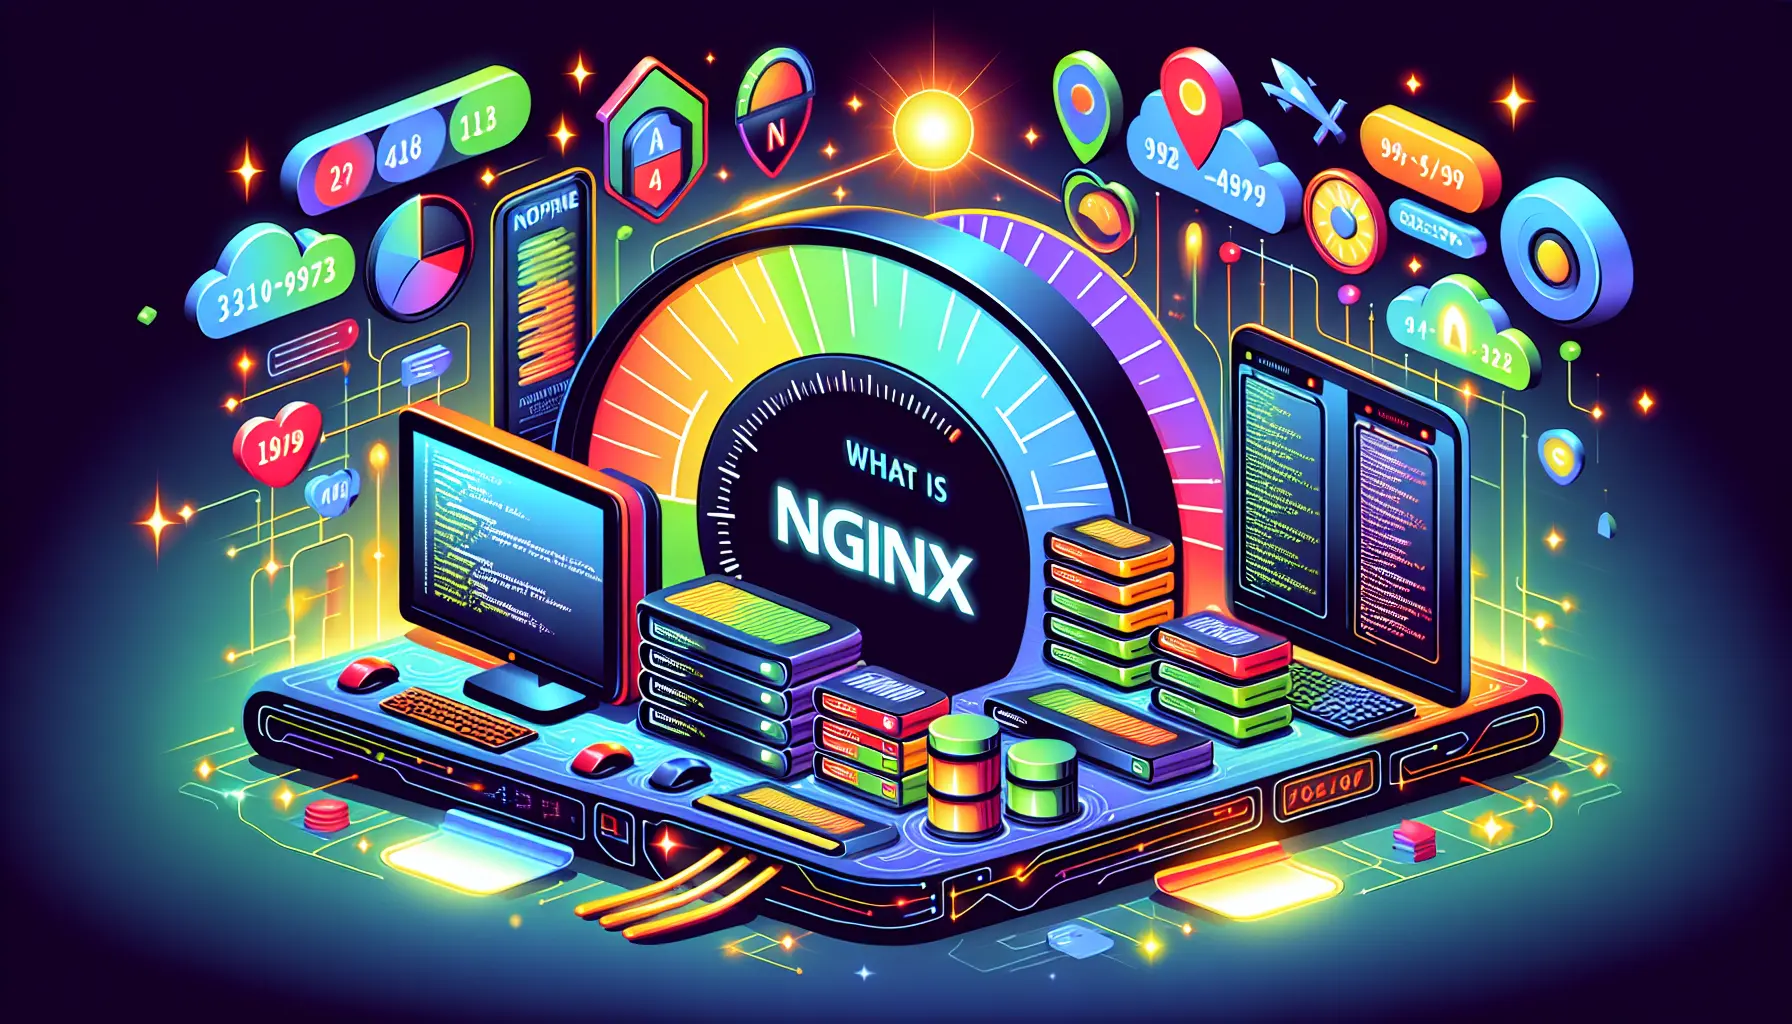 Wat is NGINX?